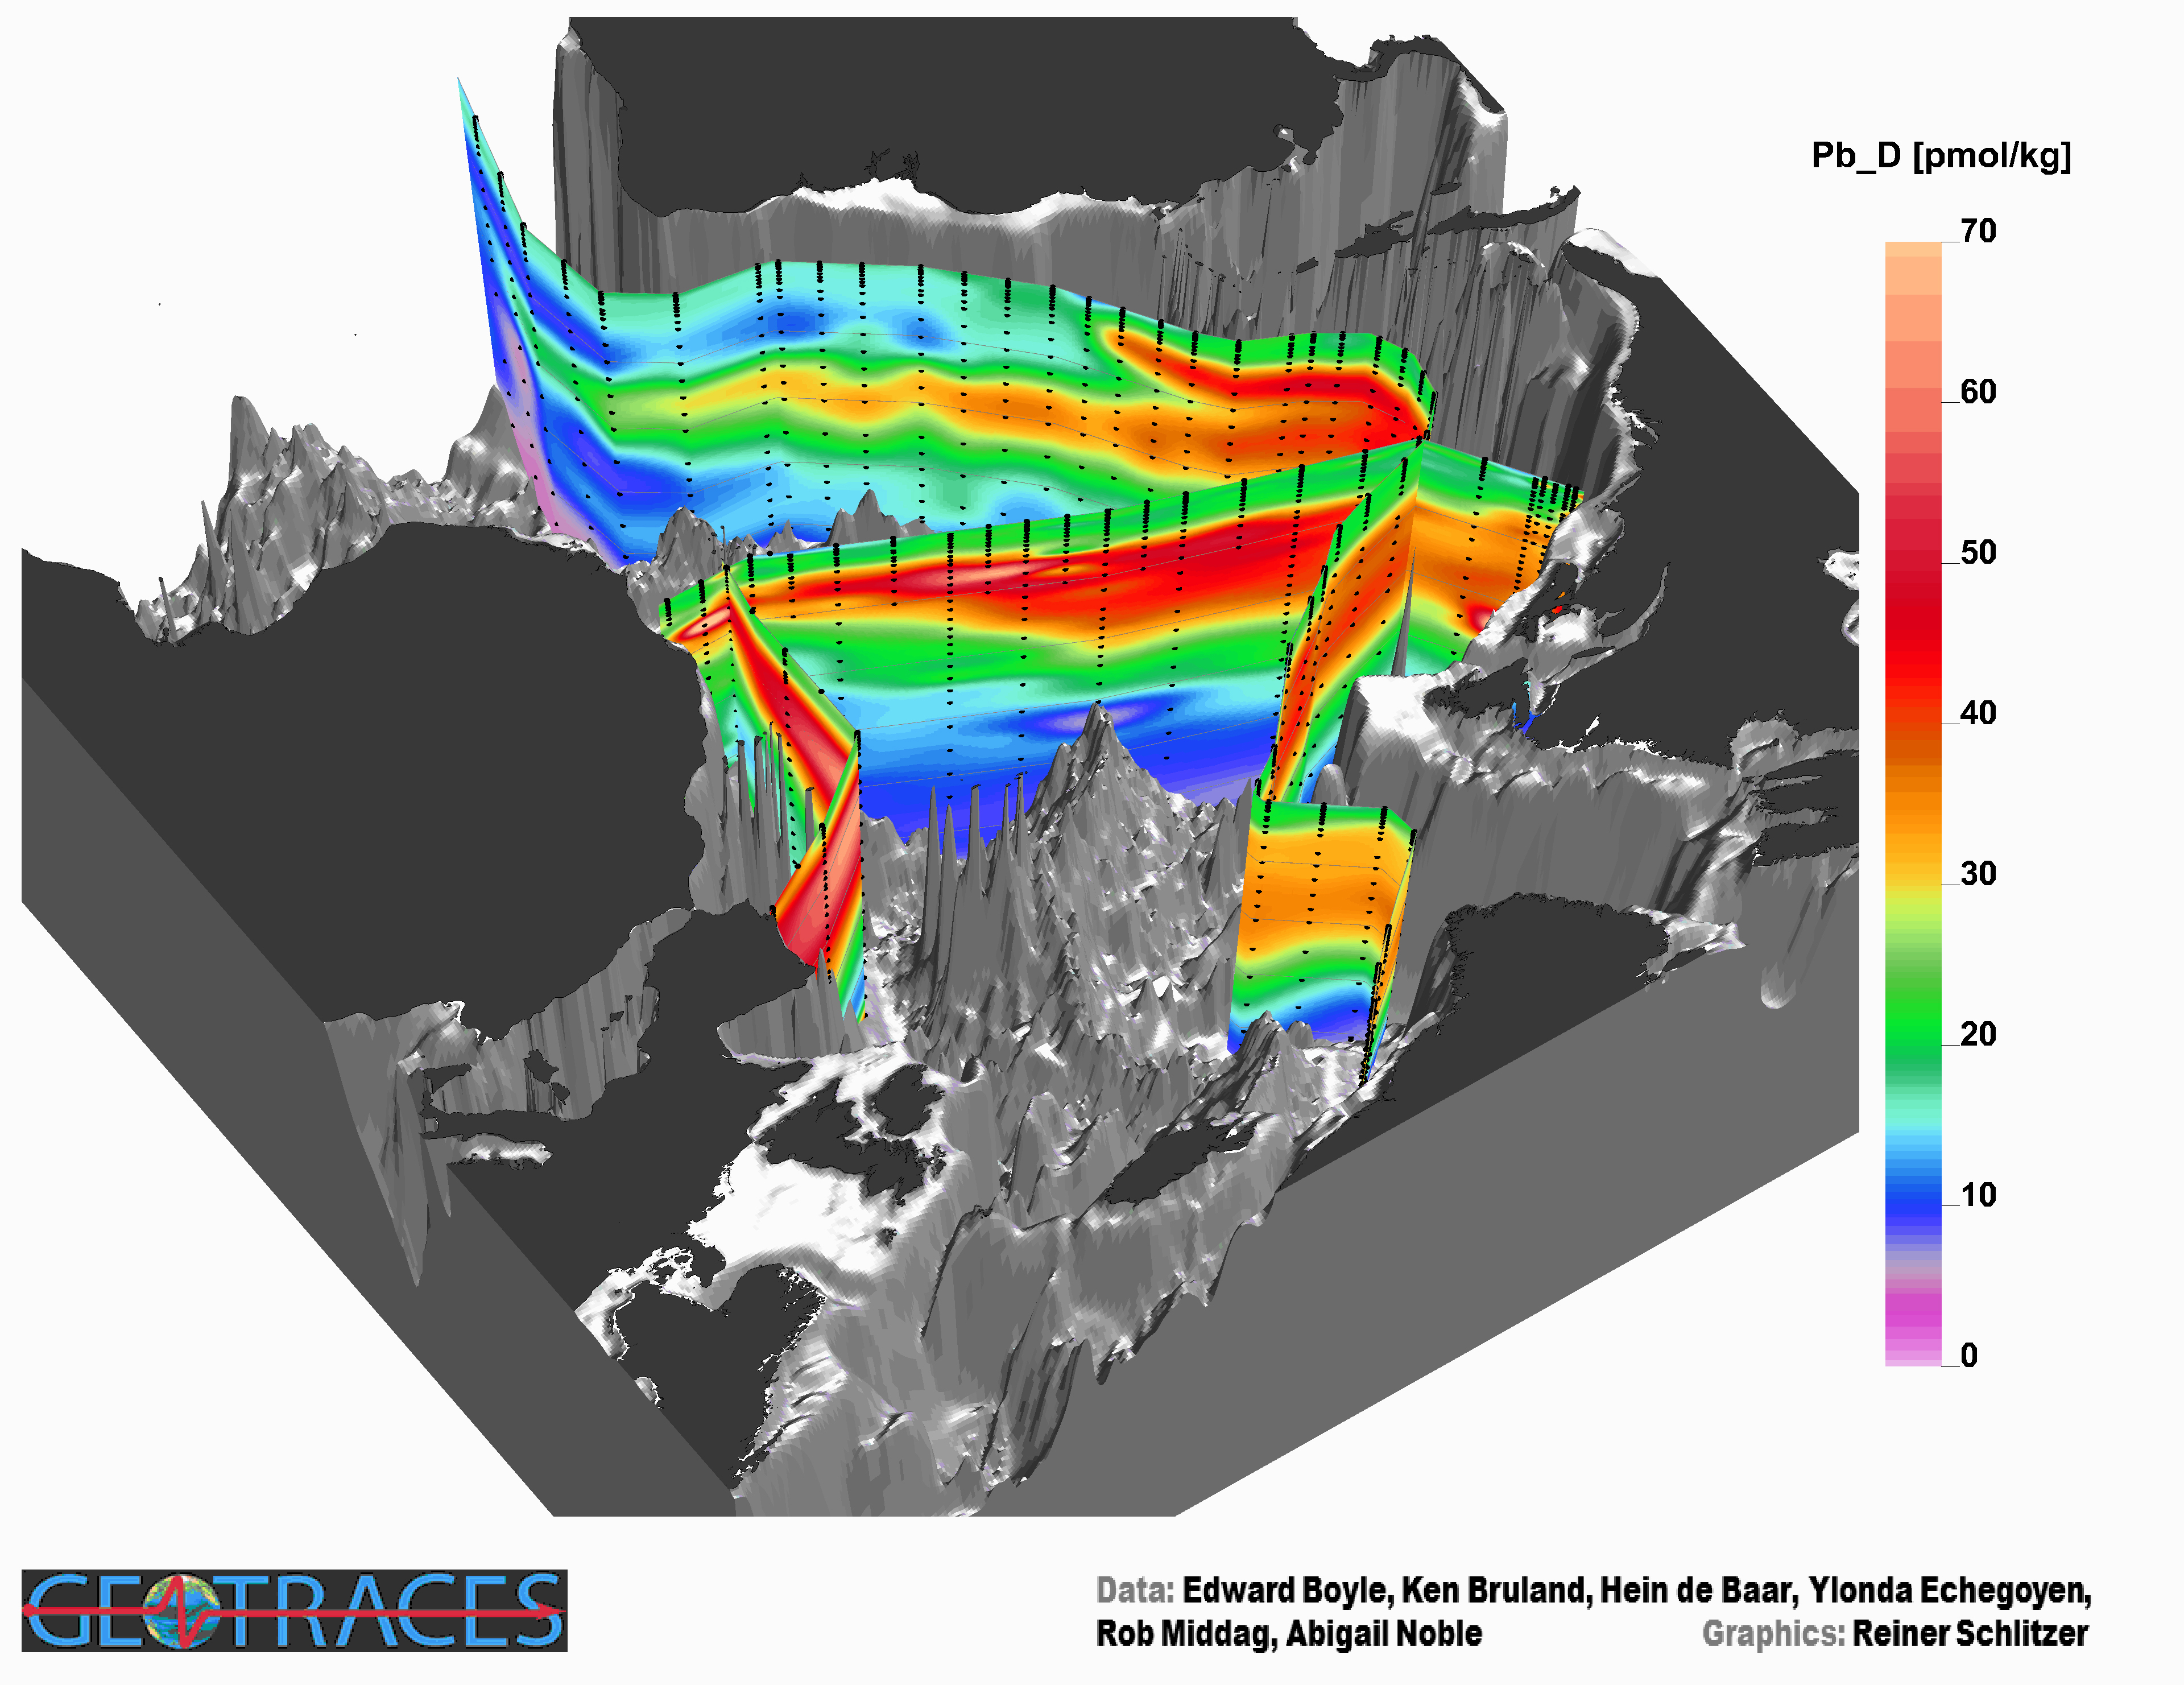 Dreidimensionale Ansicht eines Gebirges am Meeresgrund, darüber Streifen in verschiedenen Farben einer Skala für die Bleikonzentration.